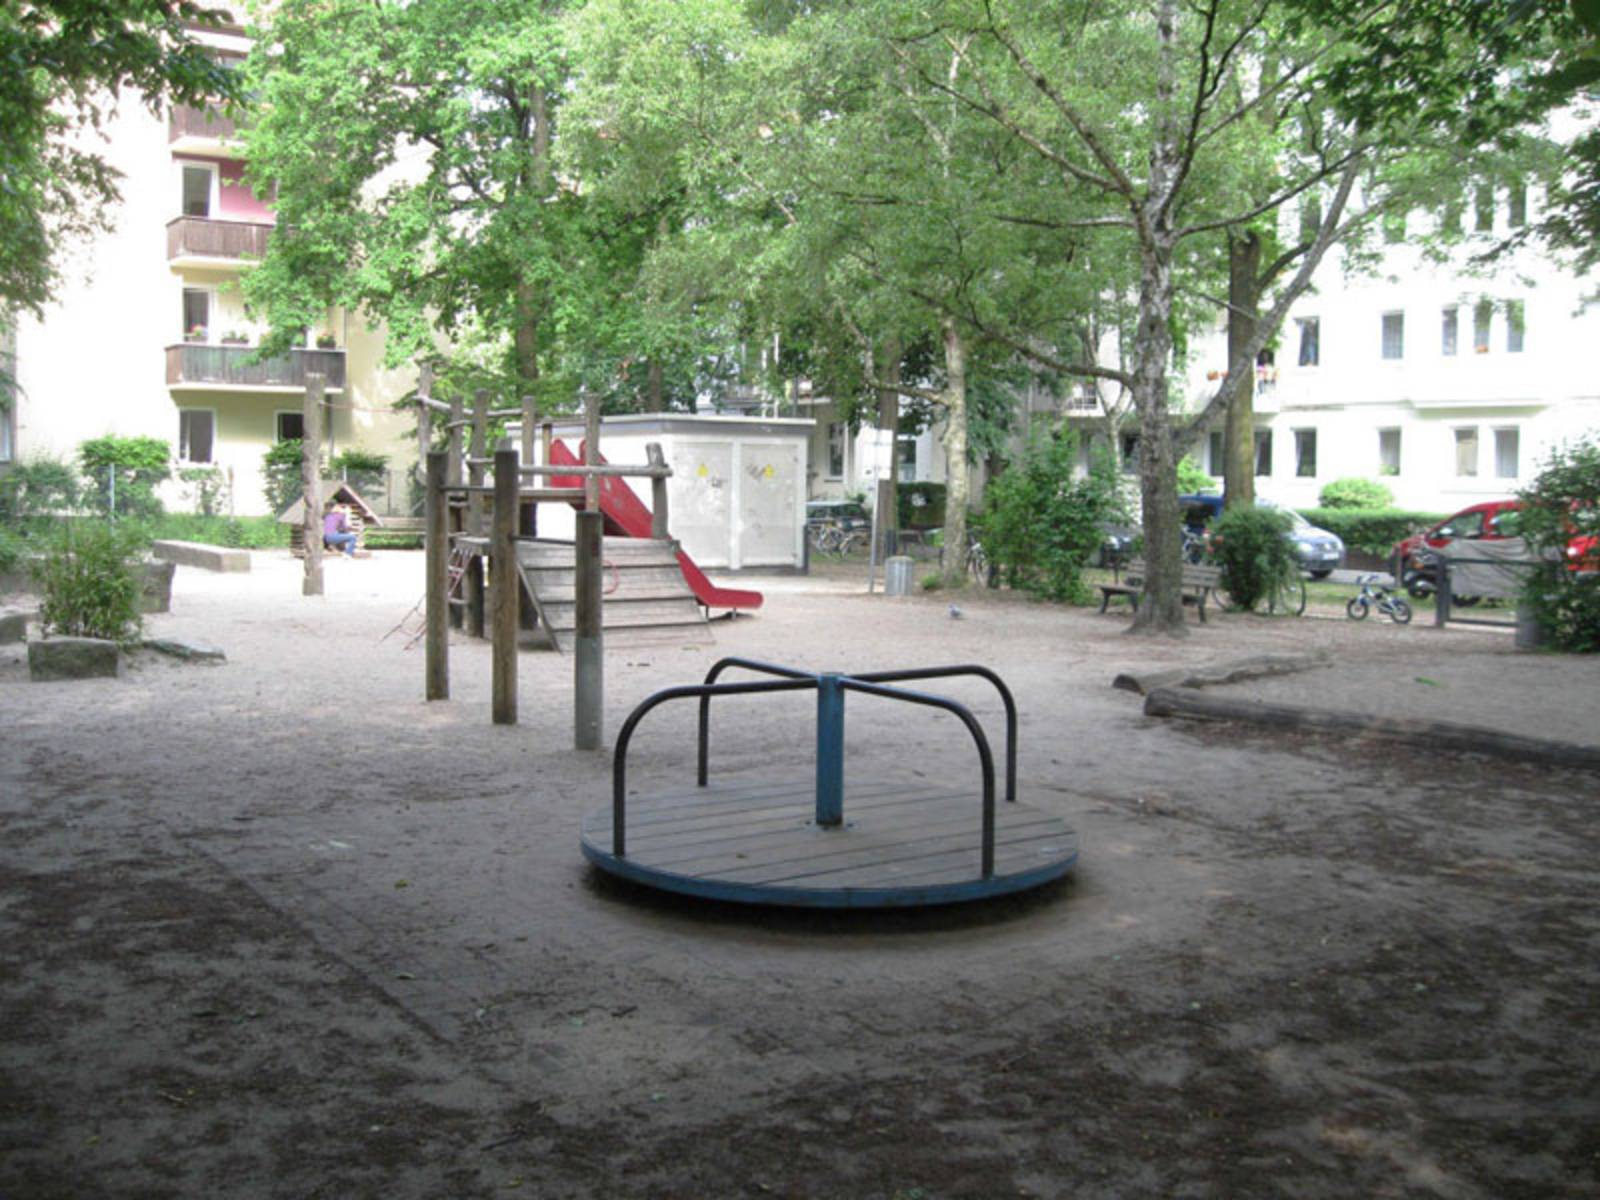 Spielgeräte auf dem Spielplatz in der Fundstraße